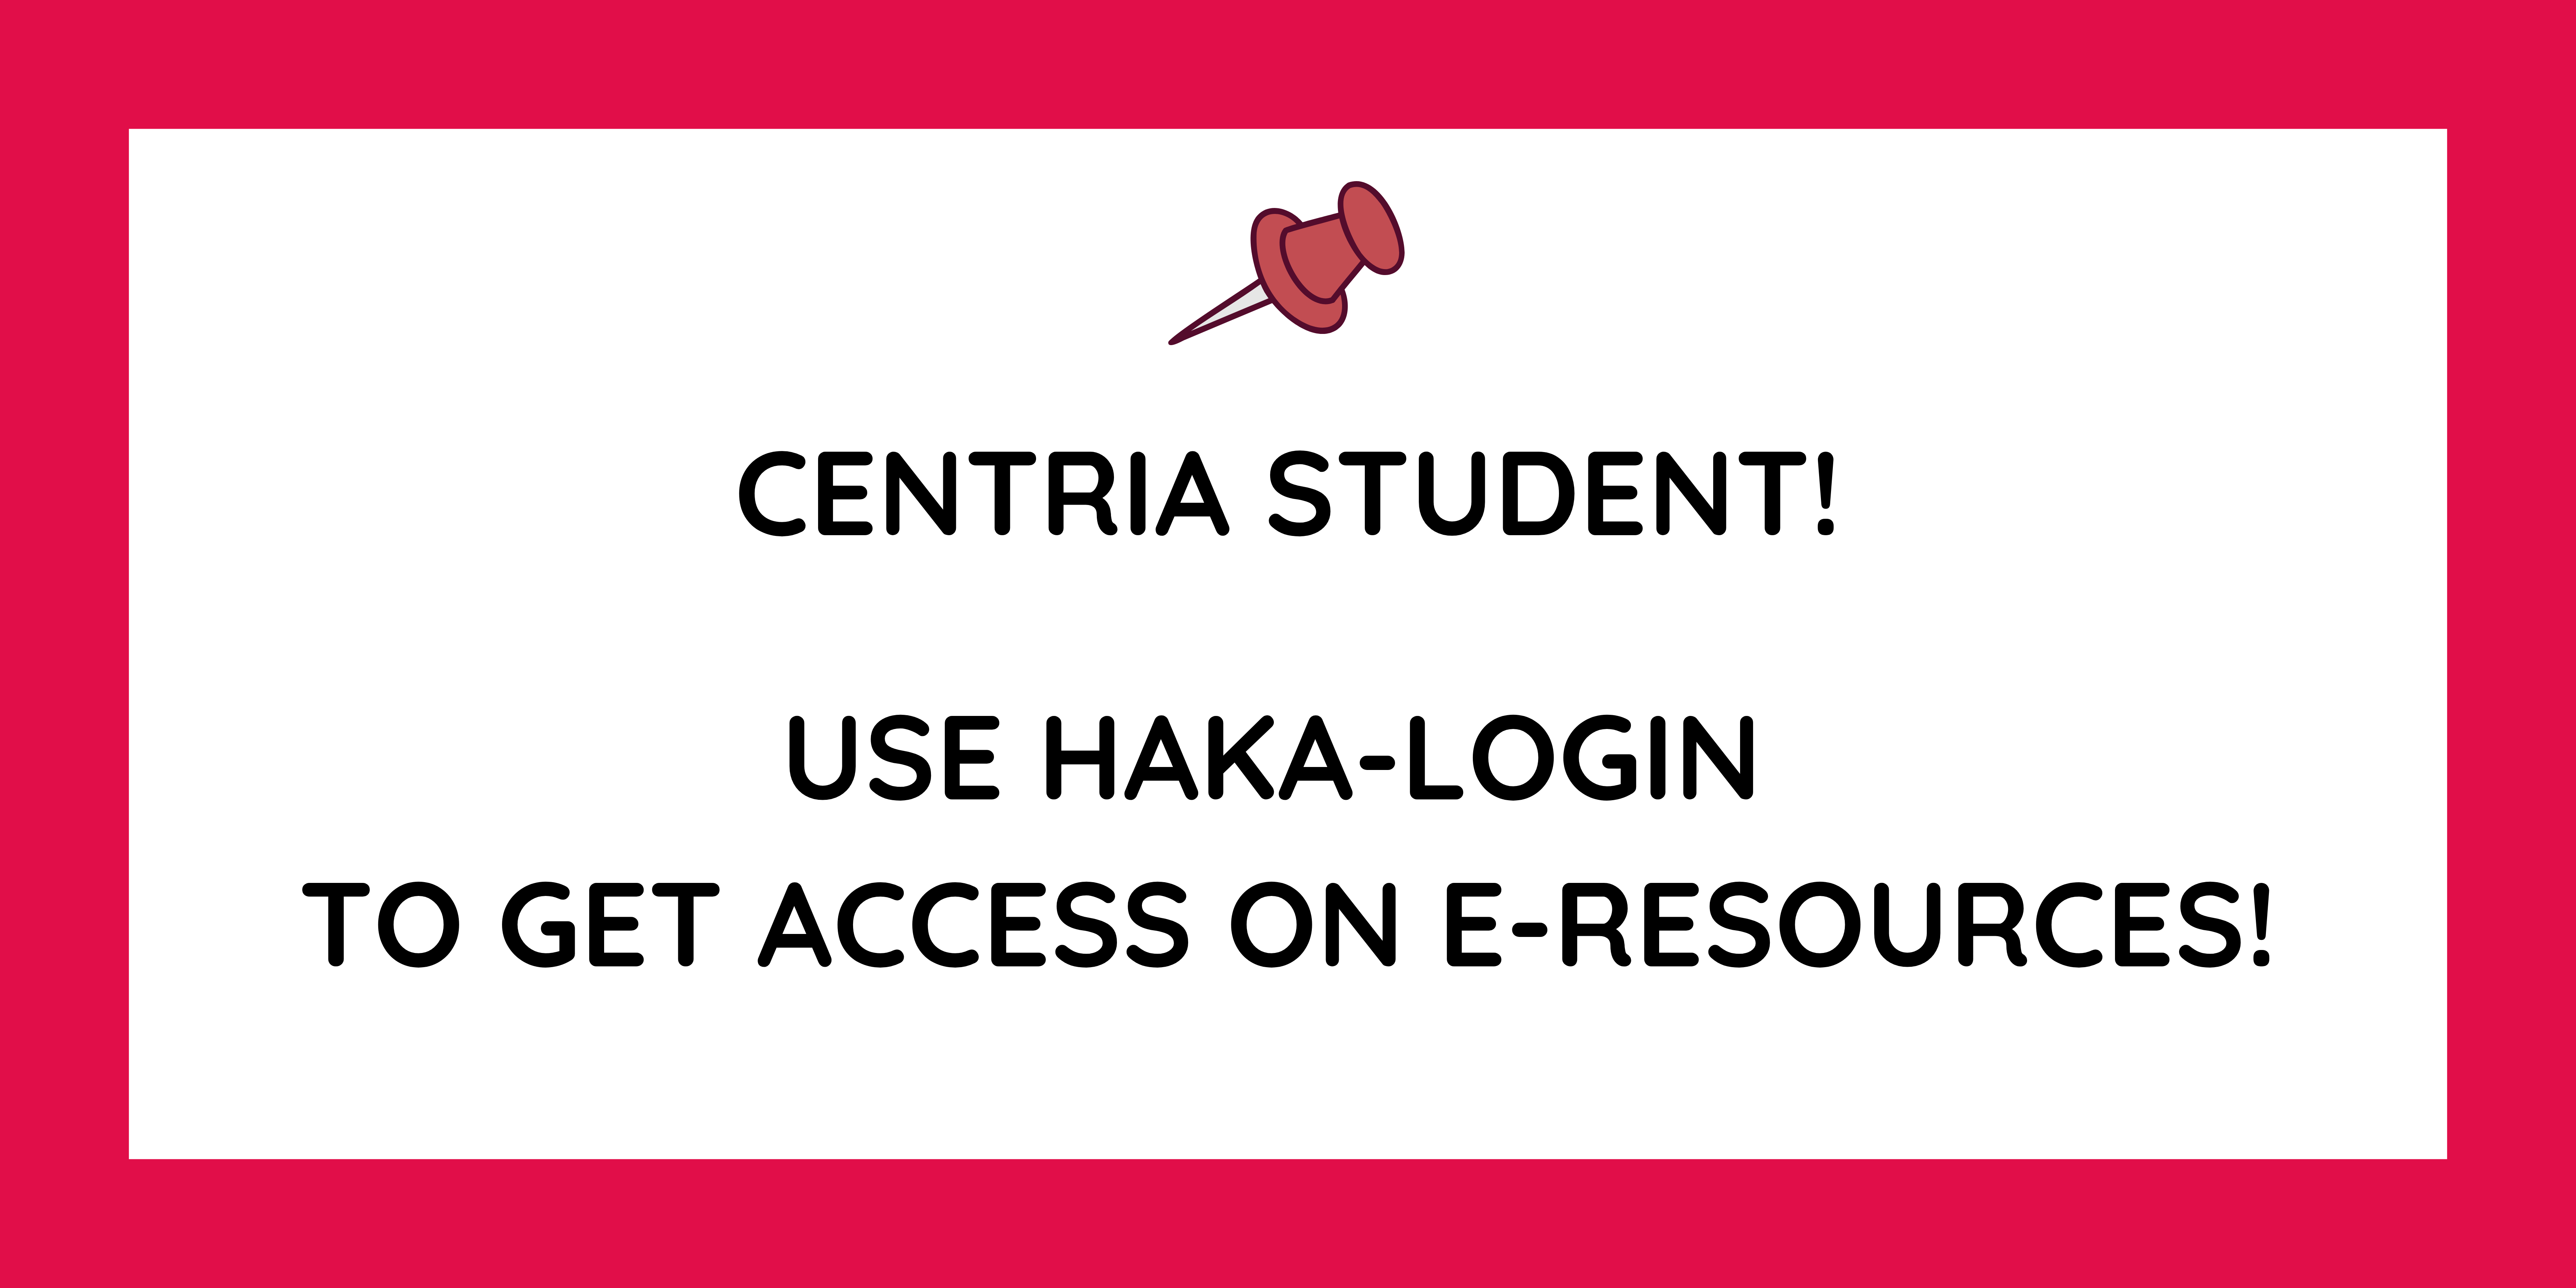 Link to Centria's e-resource list